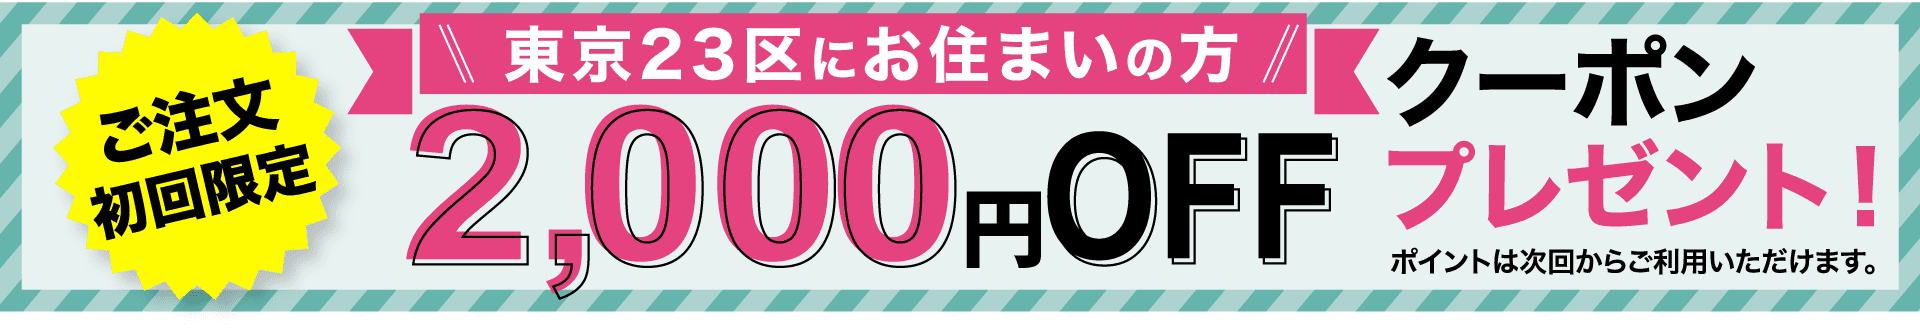 ご注文初回限定 東京23区にお住まいの方2,000円OFFクーポンプレゼント！ ポイントは次回からご利用いただけます。